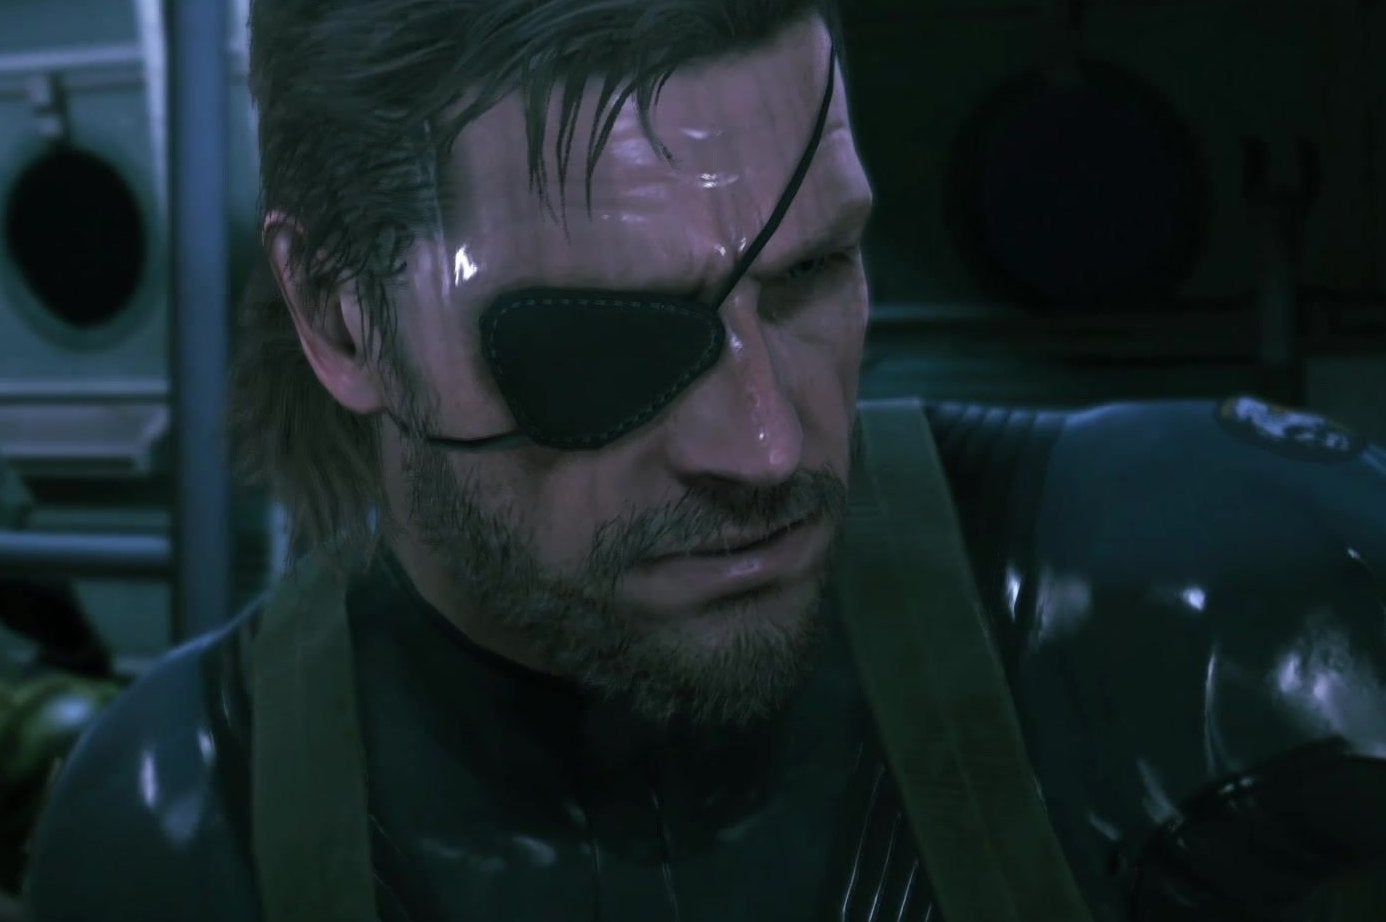 Bilder zu Metal Gear Solid 5: Ground Zeroes hat sich auf der PS4 dreimal so oft verkauft wie auf der Xbox One